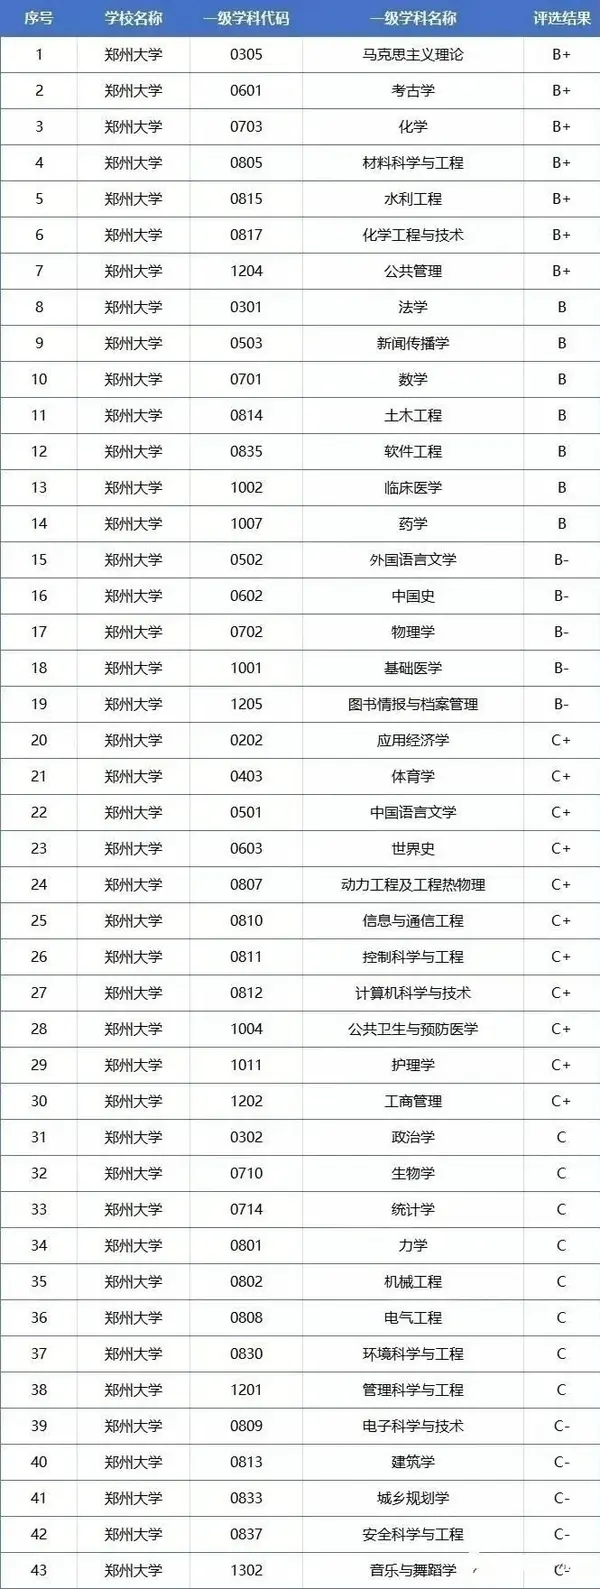 河南高校名单_南京高校名单_高校名单